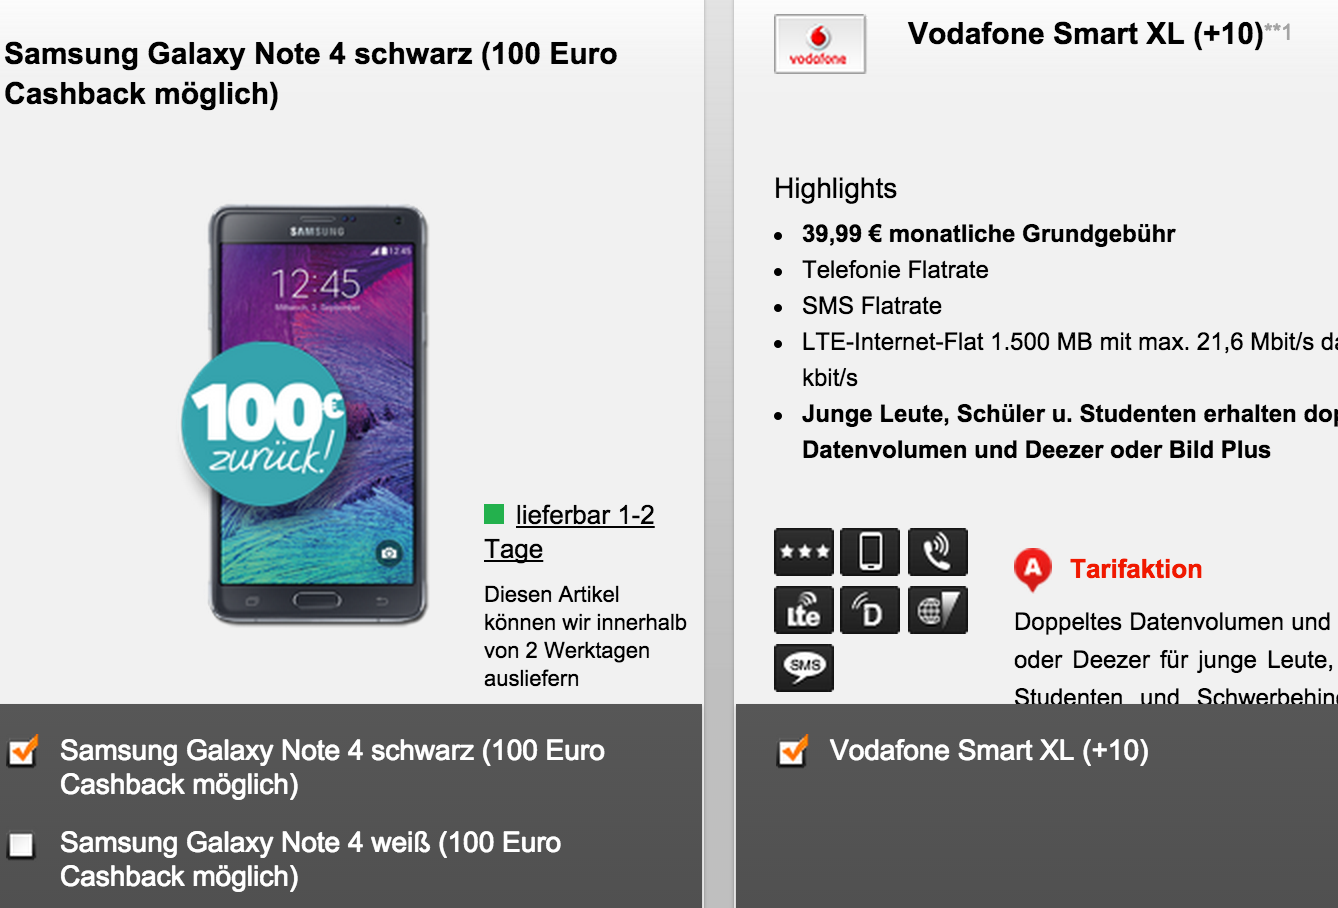 Vodafone Smart XL Tarif für nur 39,99 Euro im Monat + Galaxy Note 4 für einmalig 1,- Euro ( -100,- Euro Cashback)